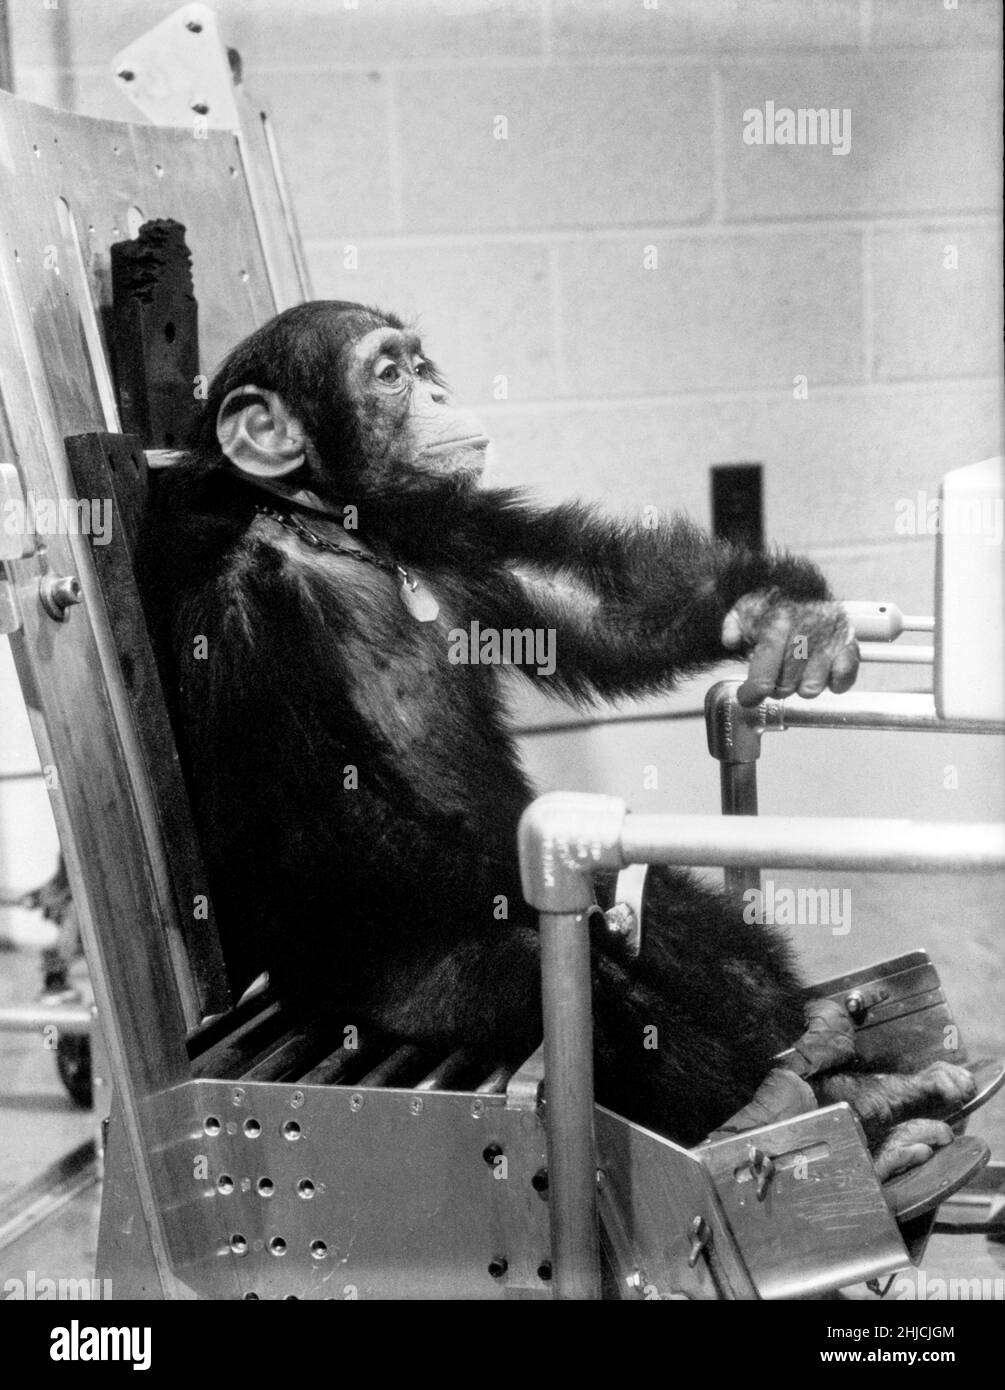 Chimpanzé Ham pendant l'activité de vol avec l'un de ses maîtres avant le vol d'essai Mercury-Redstone 2.Le 31 janvier 1961, un lancement Mercury-Redstone à partir de Cape Canaveral a porté le chimpanzé, Ham, sur une distance de plus de 400 miles dans une trajectoire voûtée qui a atteint un sommet de 158 miles au-dessus de la Terre.La mission a été couronnée de succès et Ham a bien effectué sa tâche de traction de levier en réponse au feu clignotant.La NASA a utilisé des chimpanzés et d'autres primates pour tester la capsule Mercury avant de lancer le premier astronaute américain Alan Shepard en mai 1961. Banque D'Images